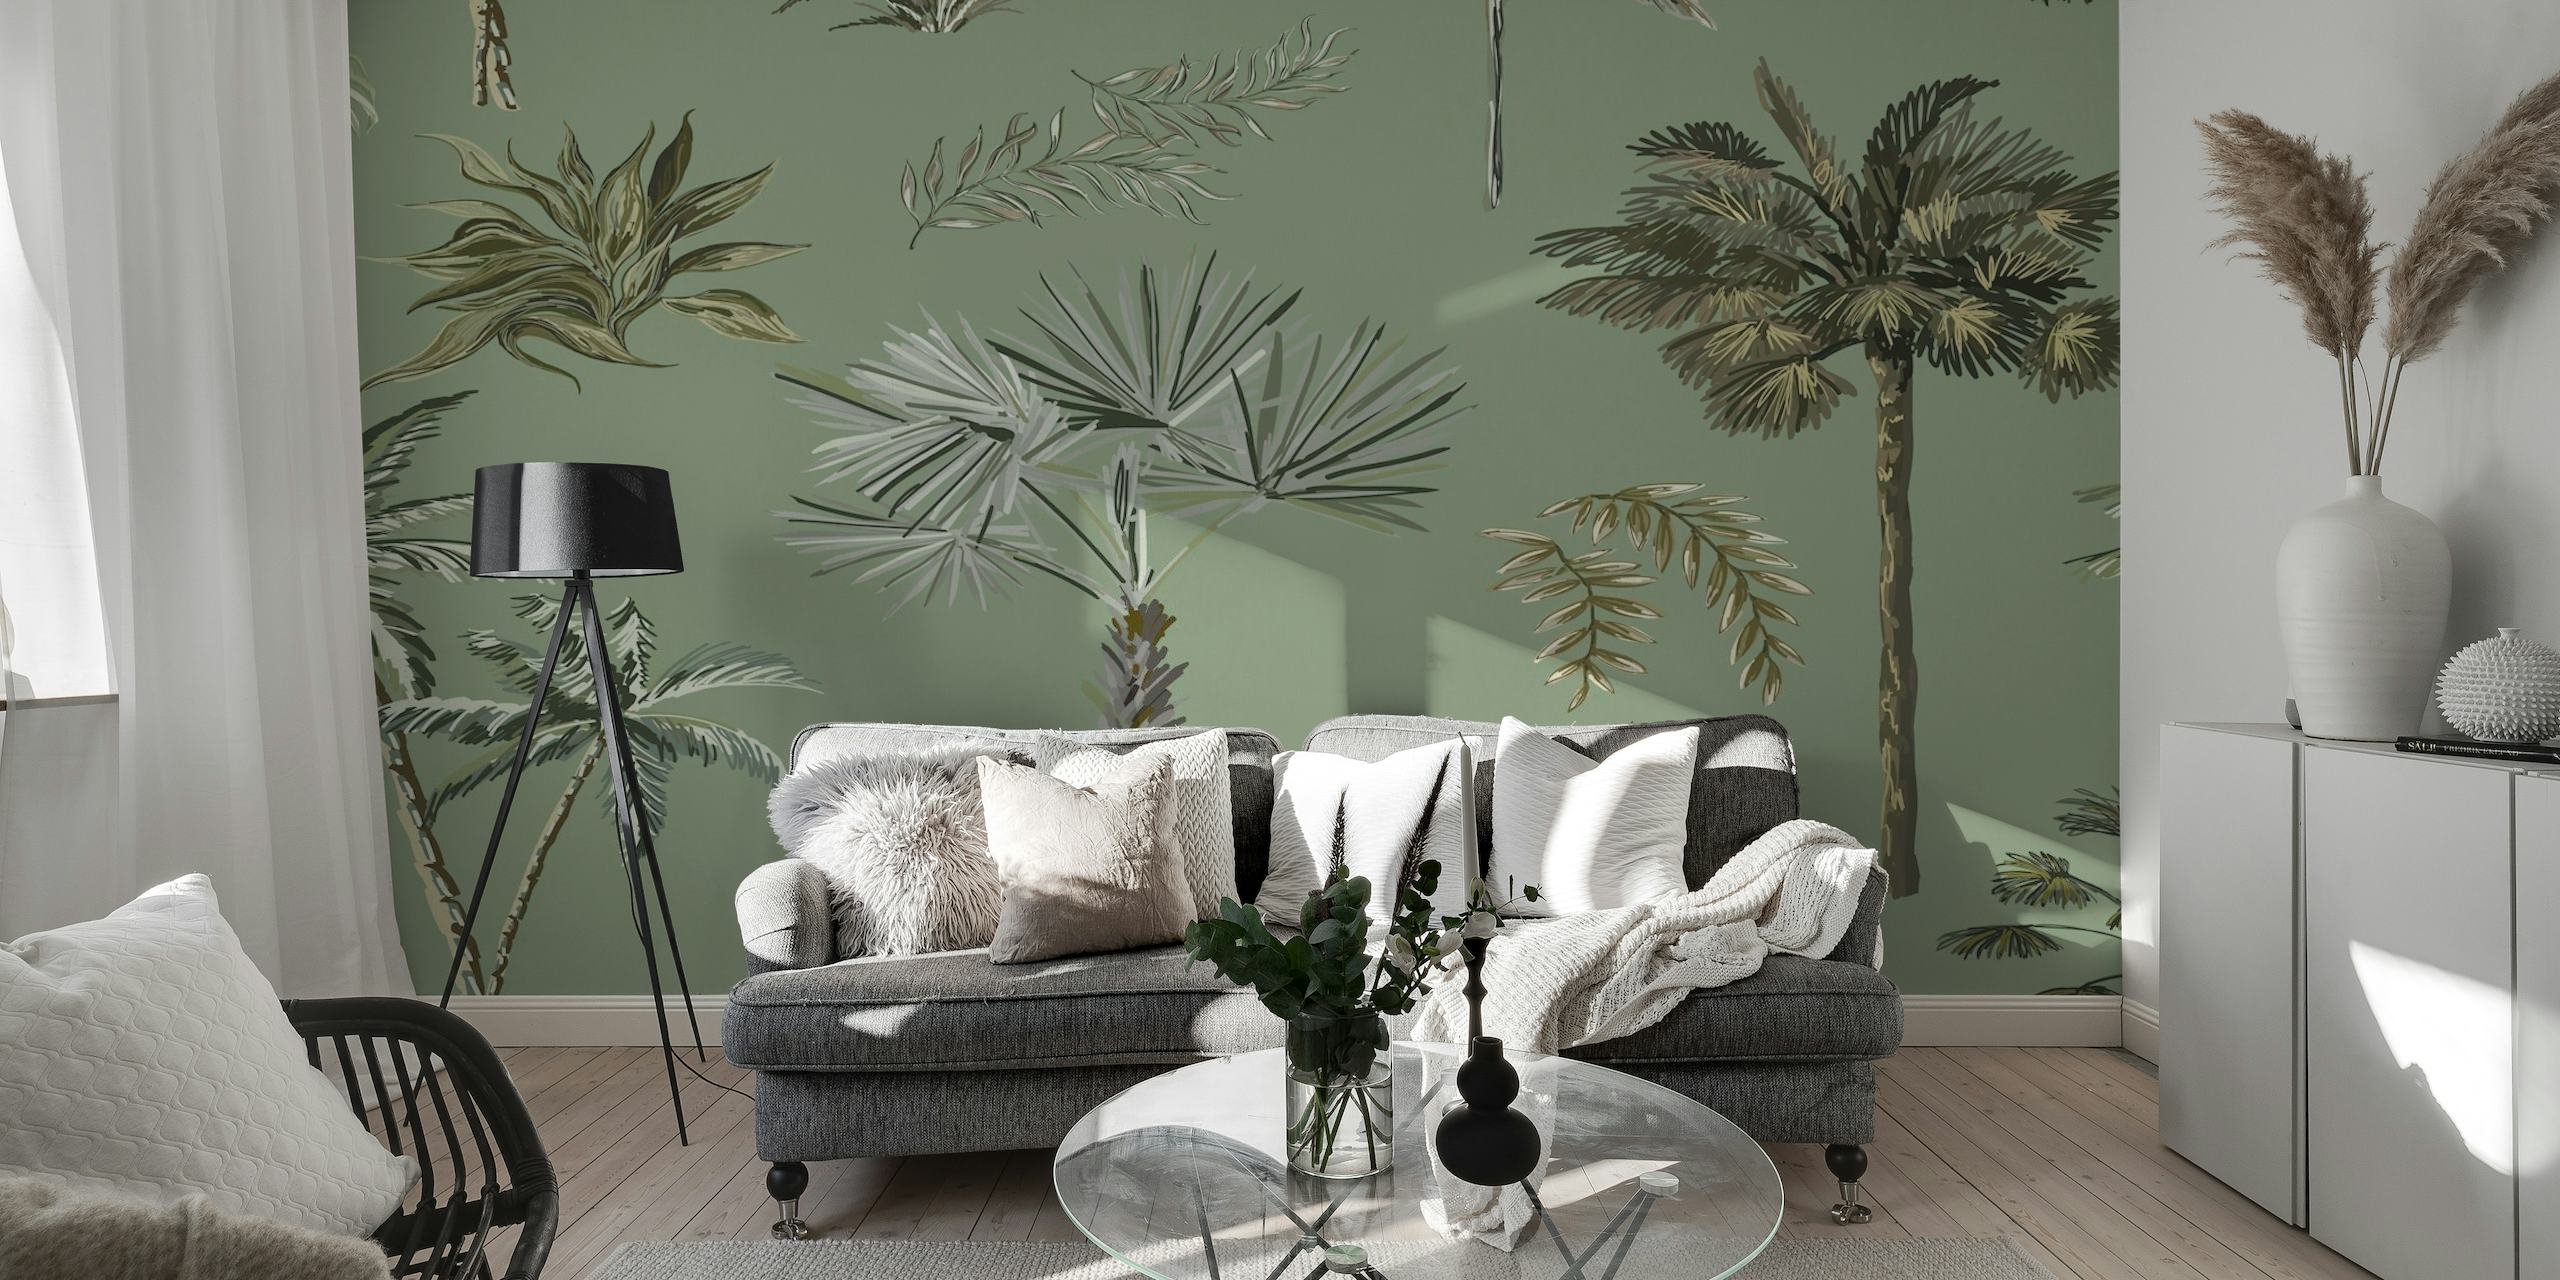 Fotomural vinílico de palmeira tropical em tons de verde para decoração de interiores